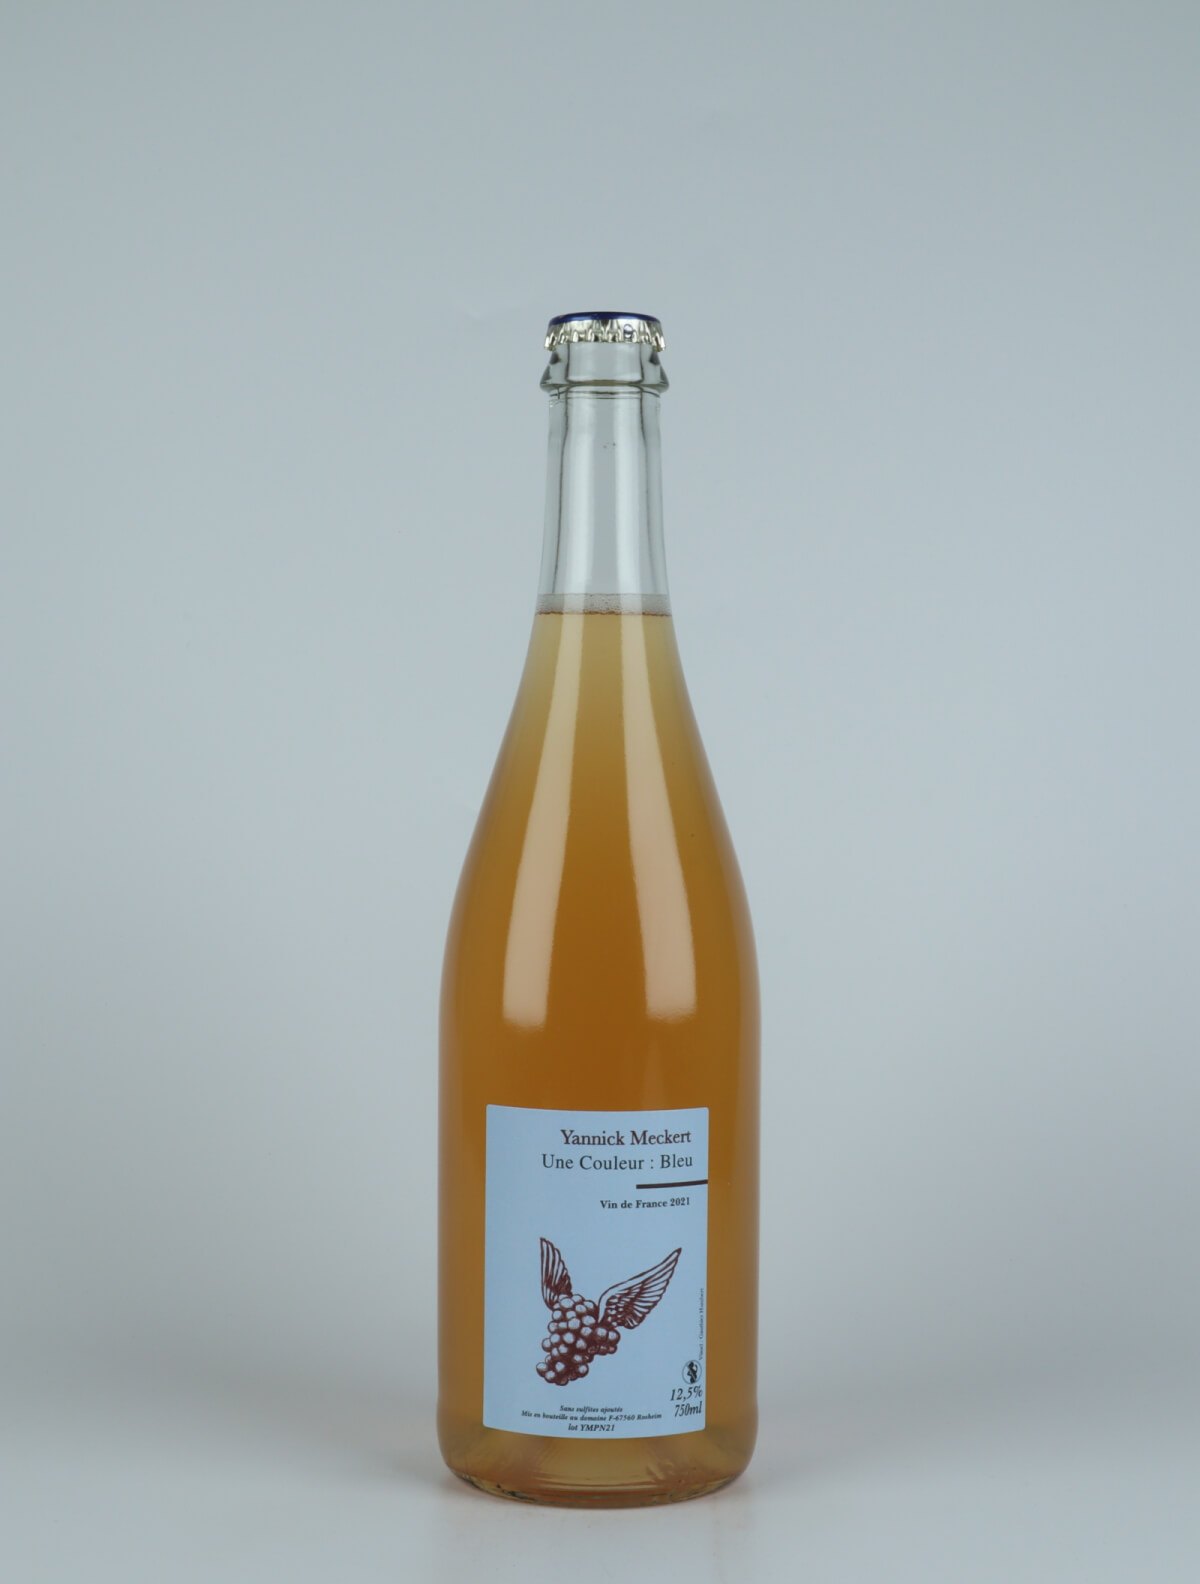 En flaske N.V. Petnat Mousserende fra Yannick Meckert, Alsace i Frankrig